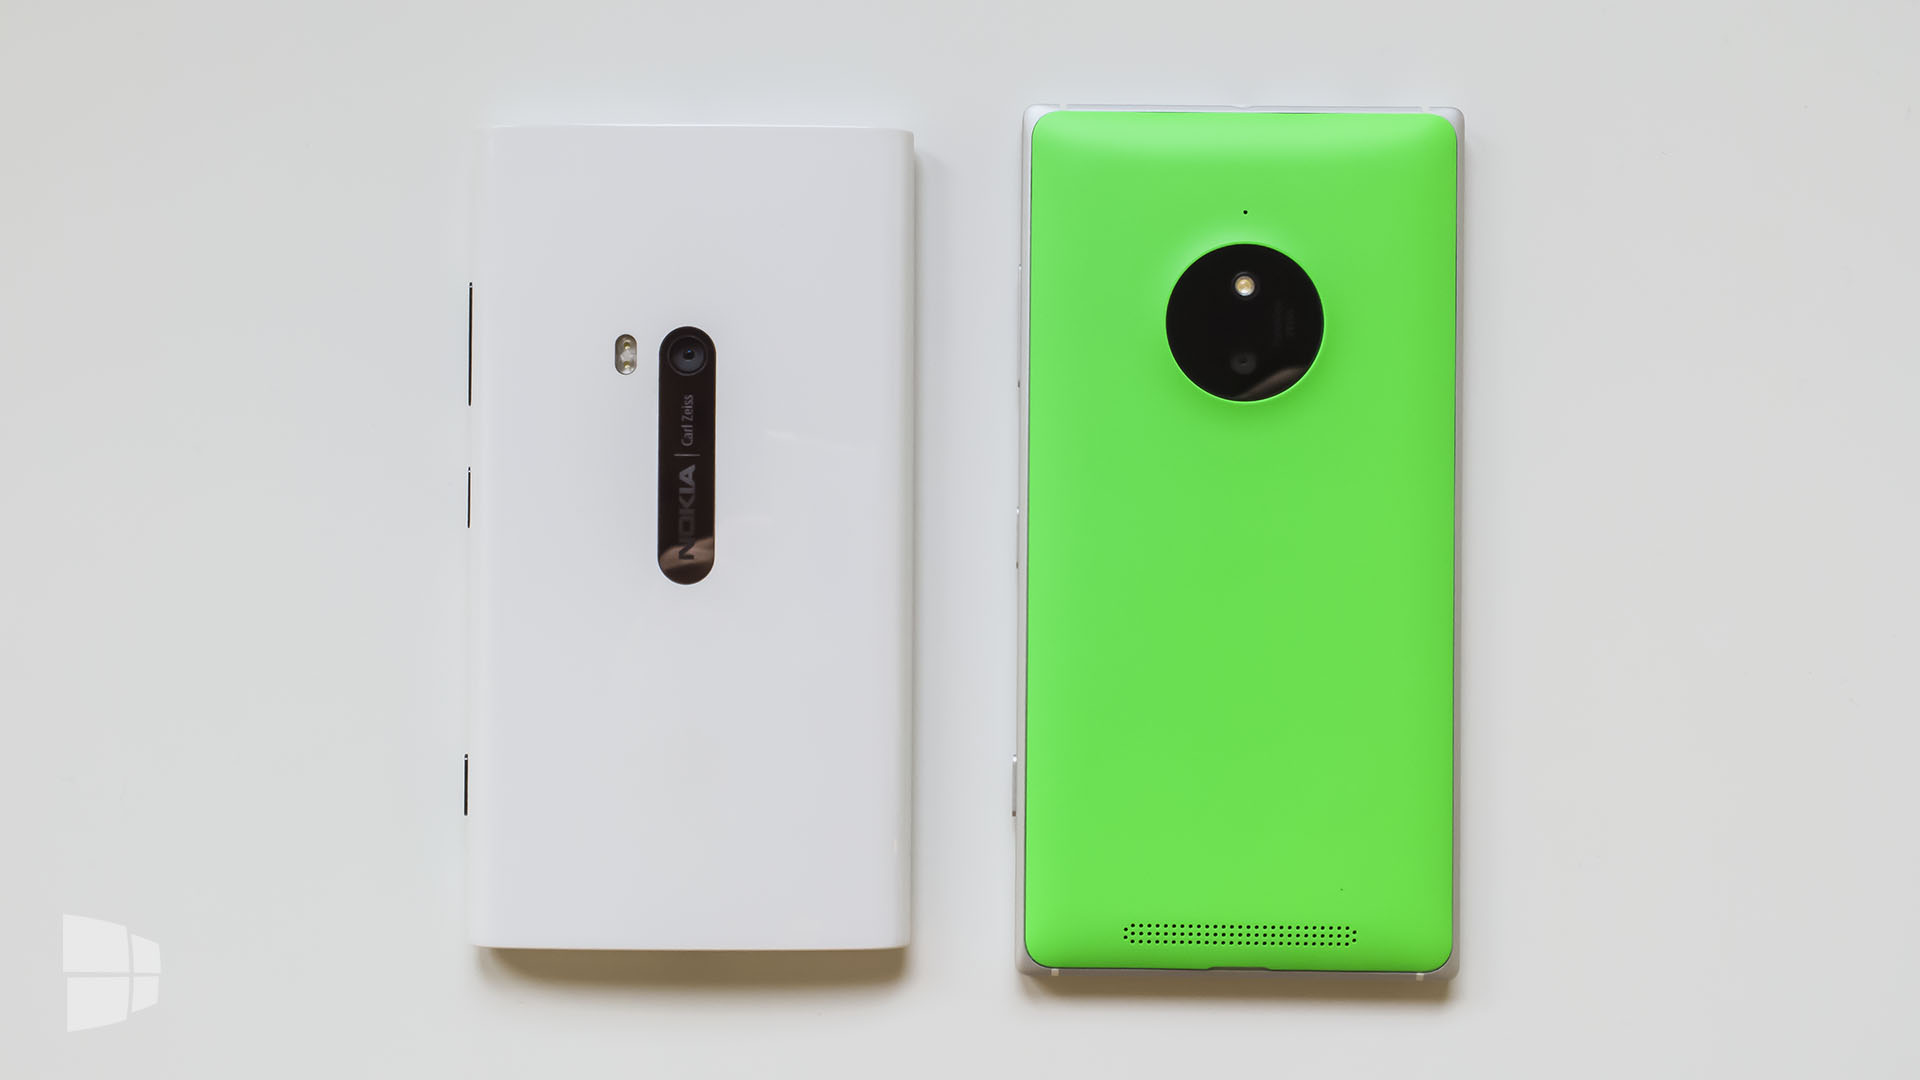 Nokia Lumia 830 (5)